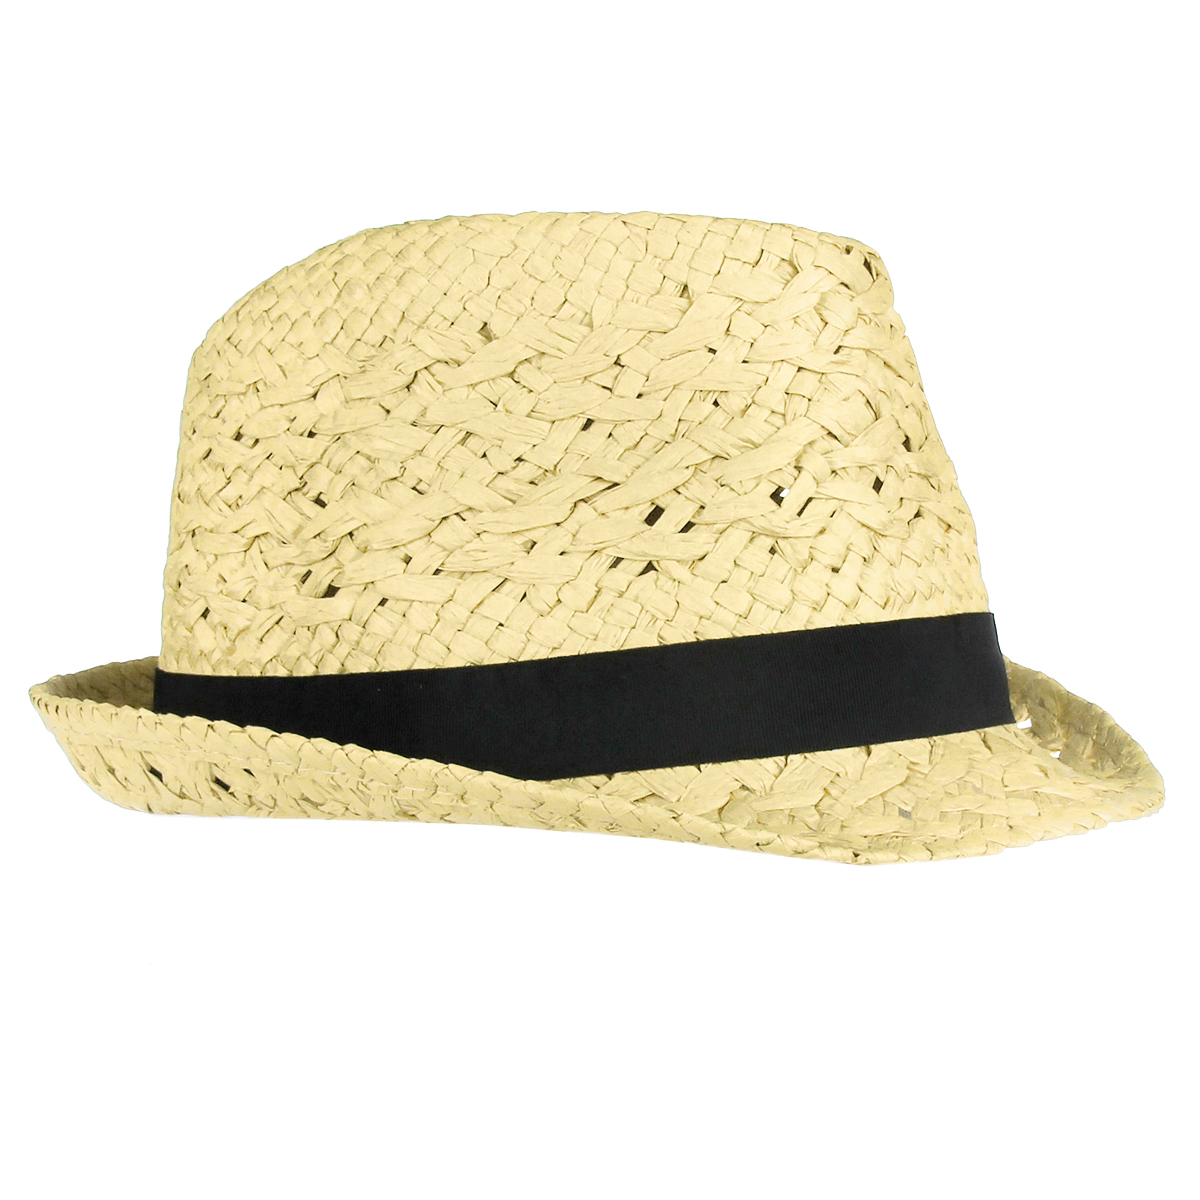 Шляпа унисекс Canoe Casa, цвет: бежевый. 1961089. Размер универсальный